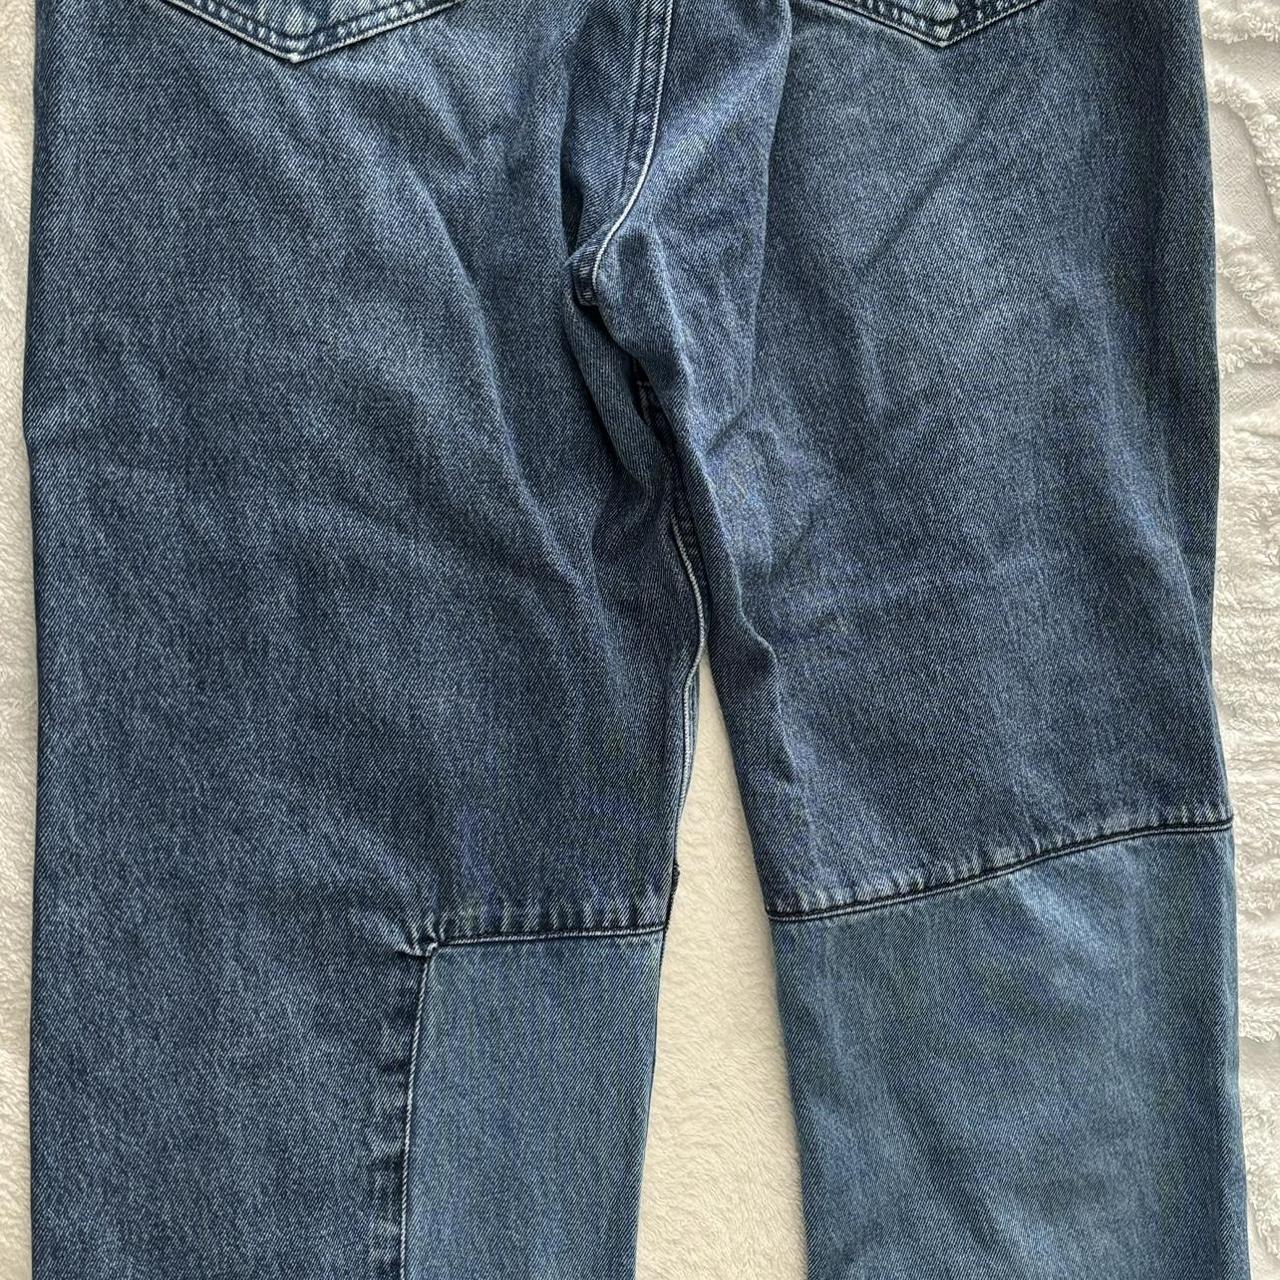 Baggy BDG jeans skate fit 34/32. A little wear on... - Depop